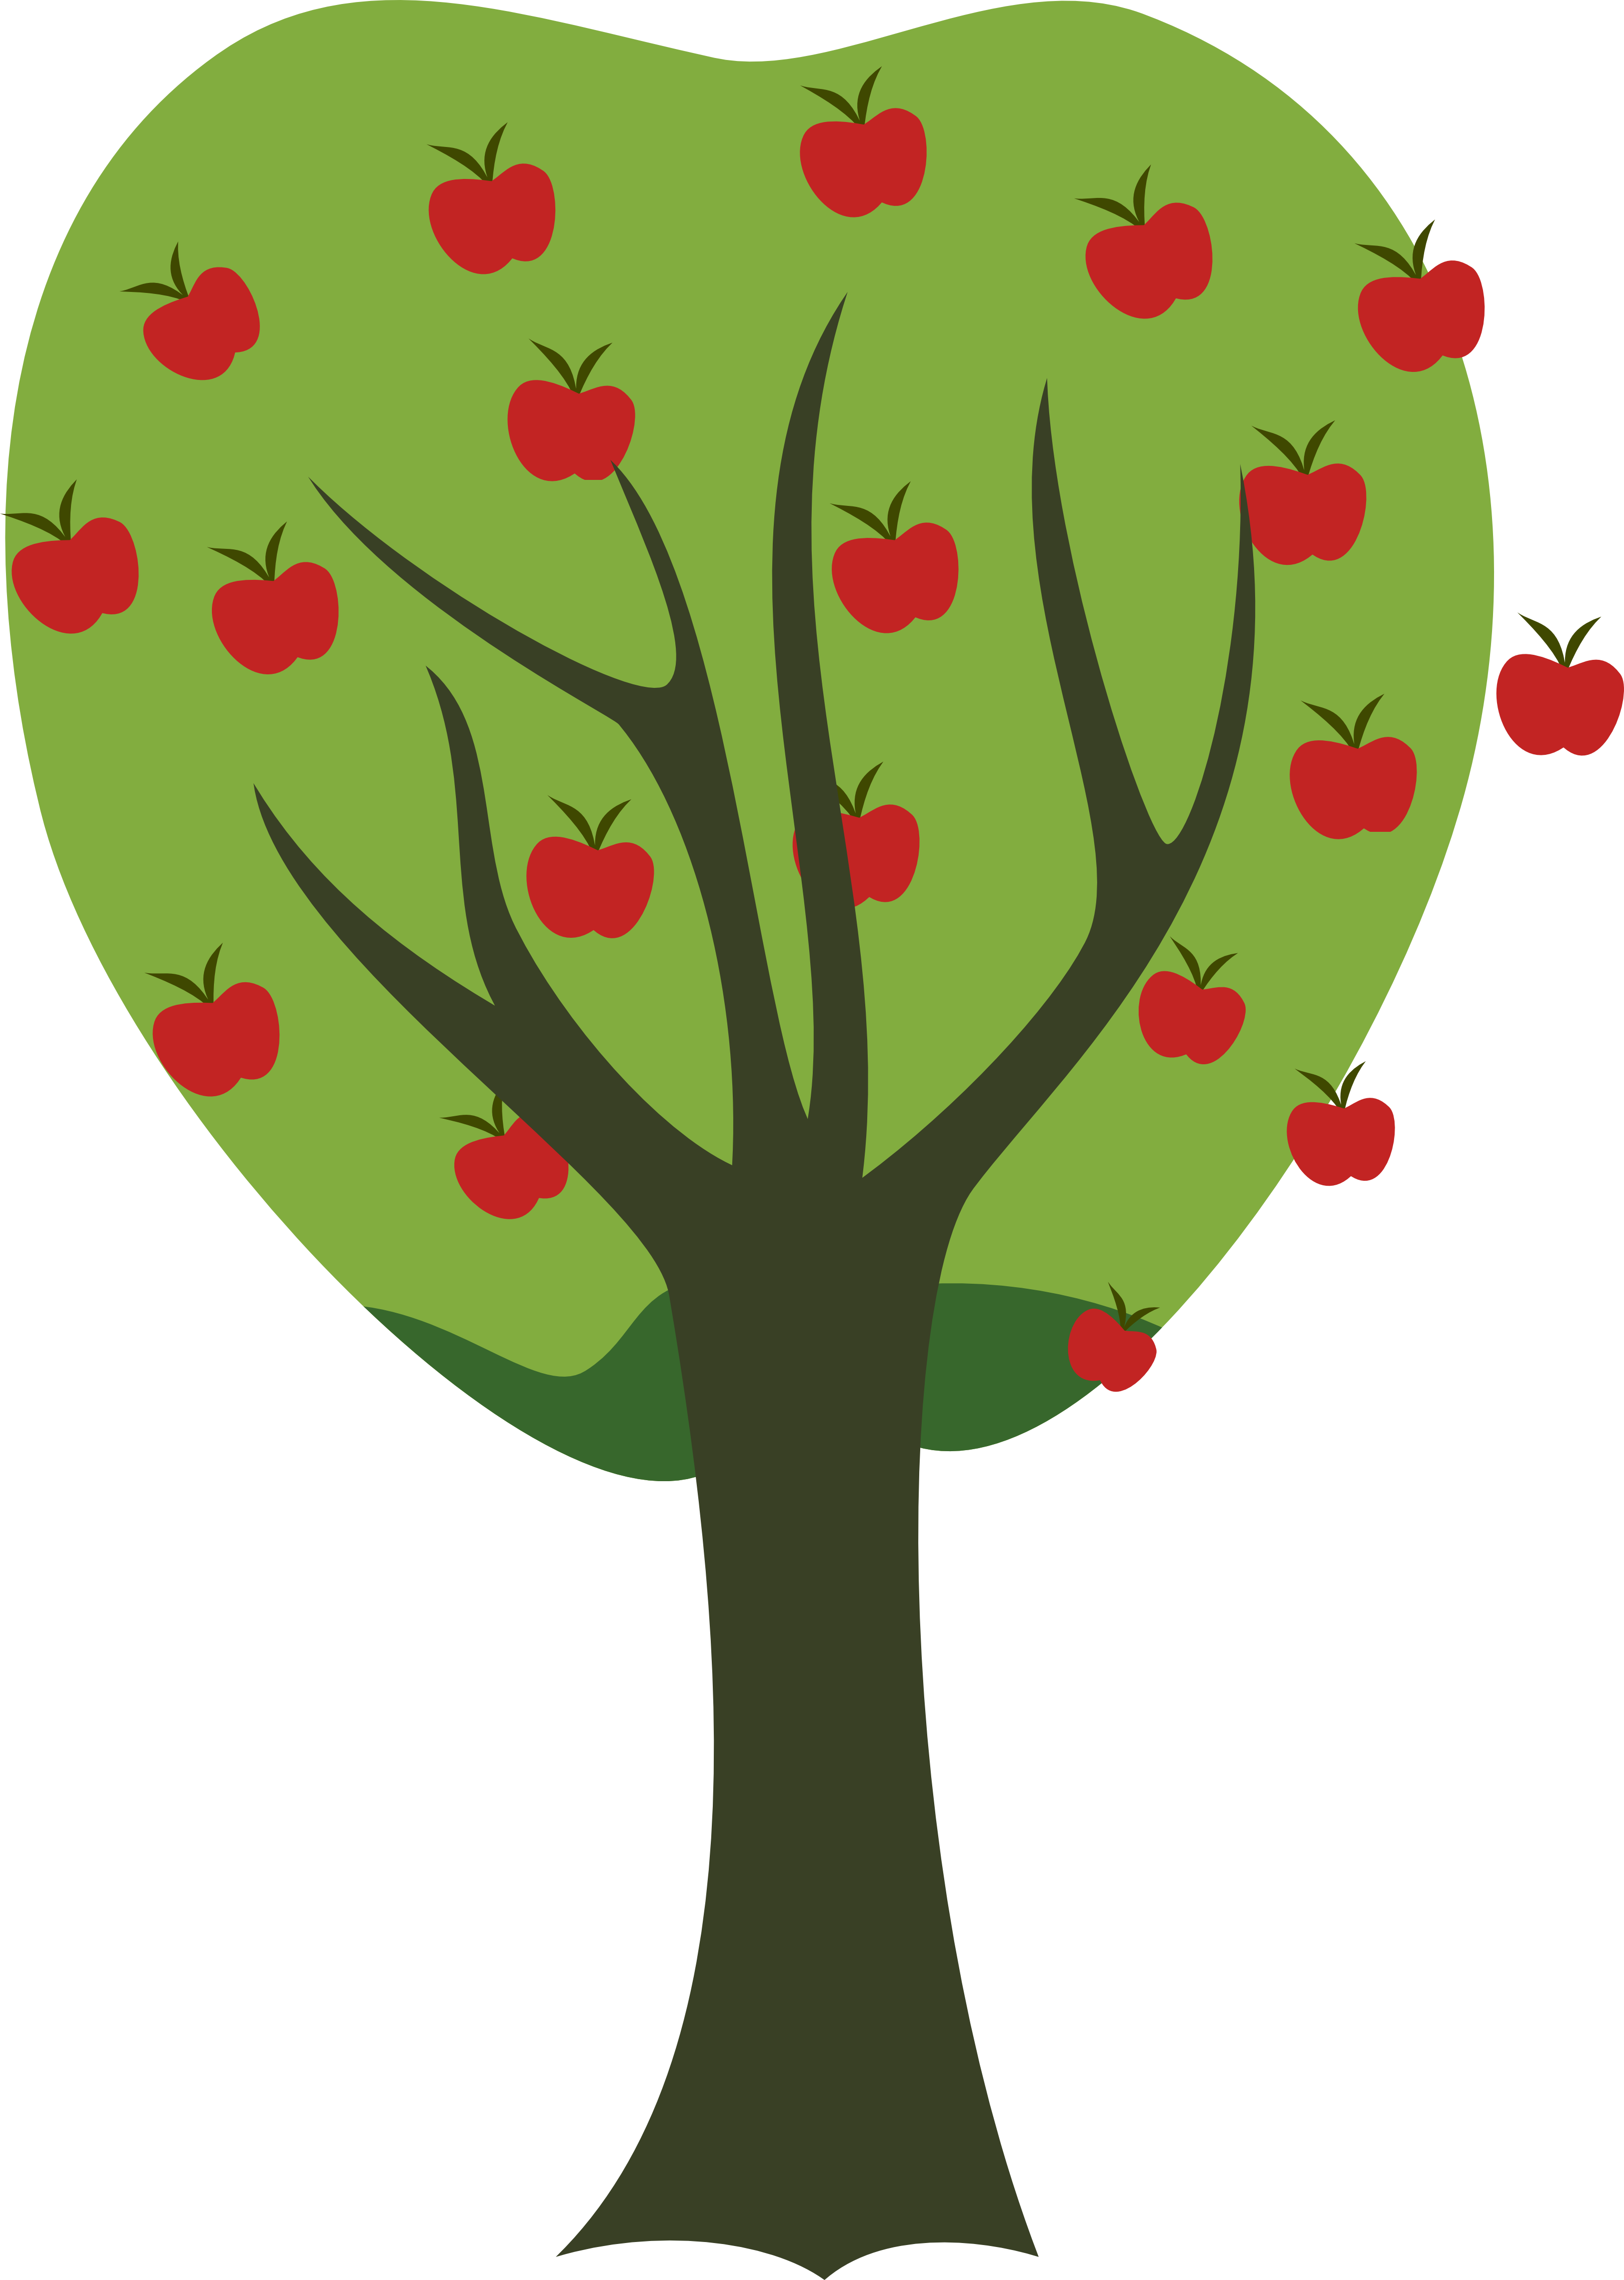 وکتور دوربری hd درخت قلبی با سیب های قرمز خوشمزه 